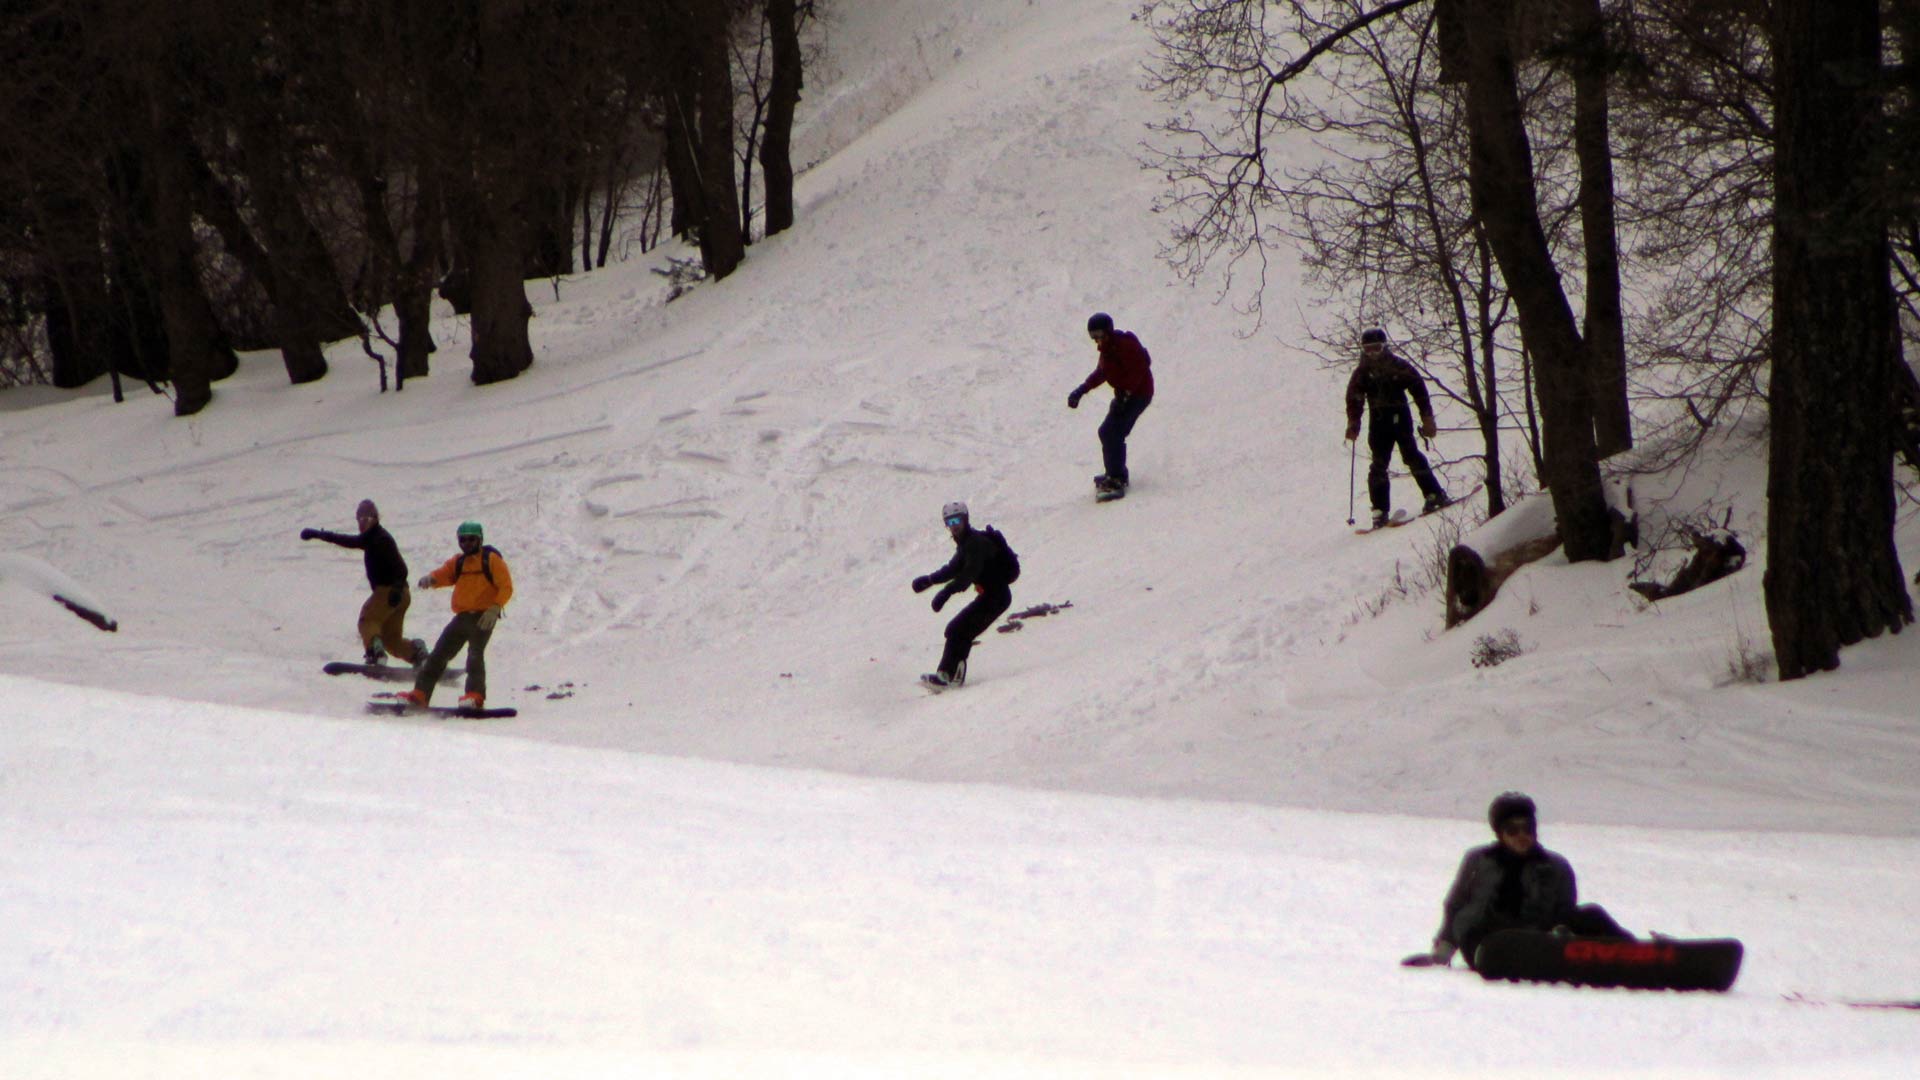 Wide shot of ski slopes